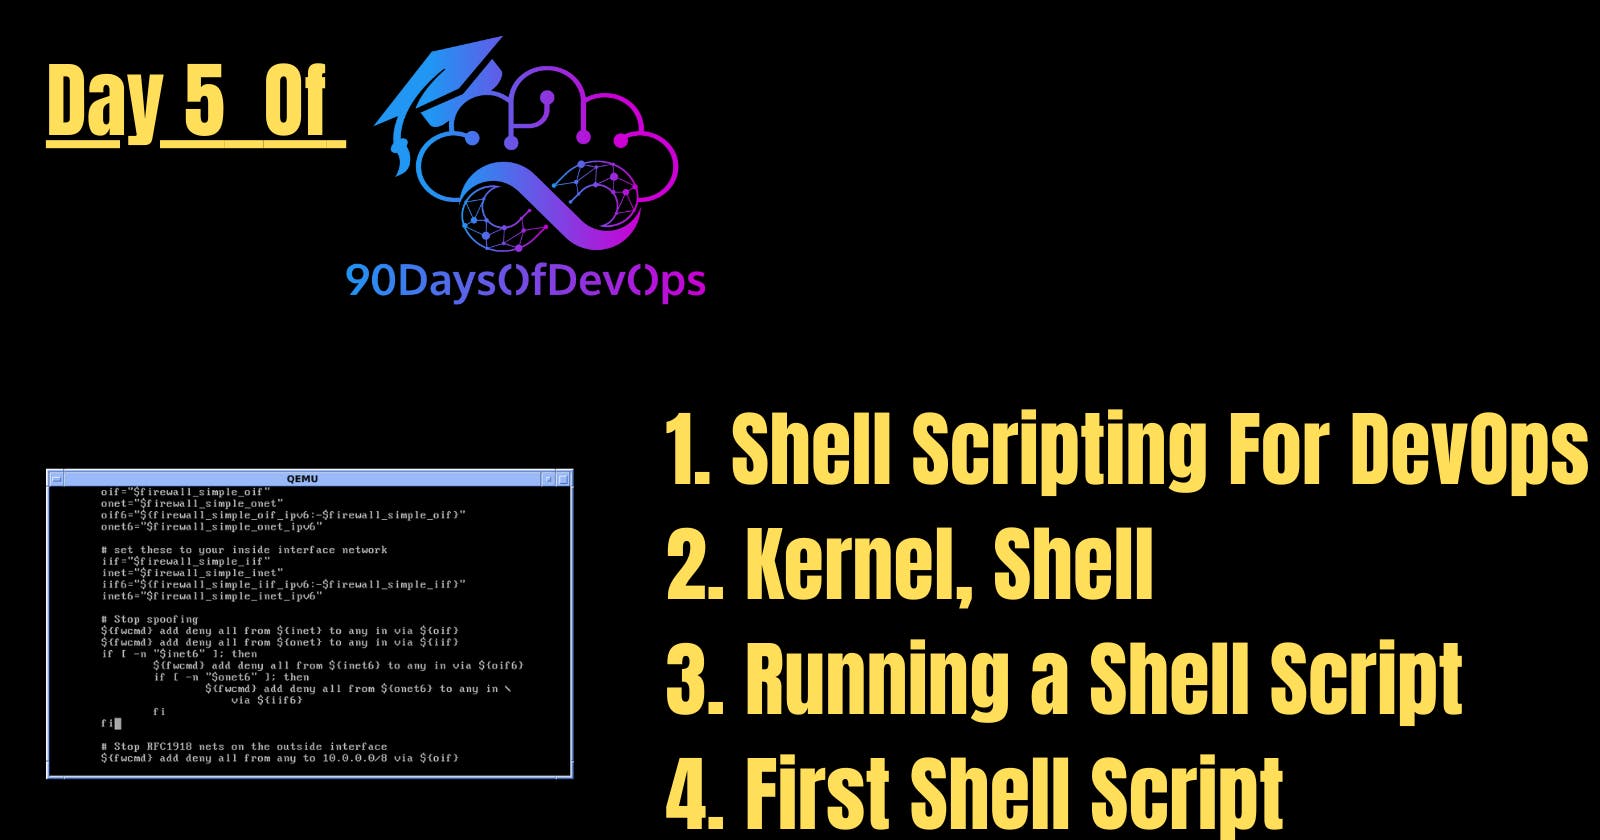 Day 5 of 90 Days of DevOps: Shell Scripting For DevOps